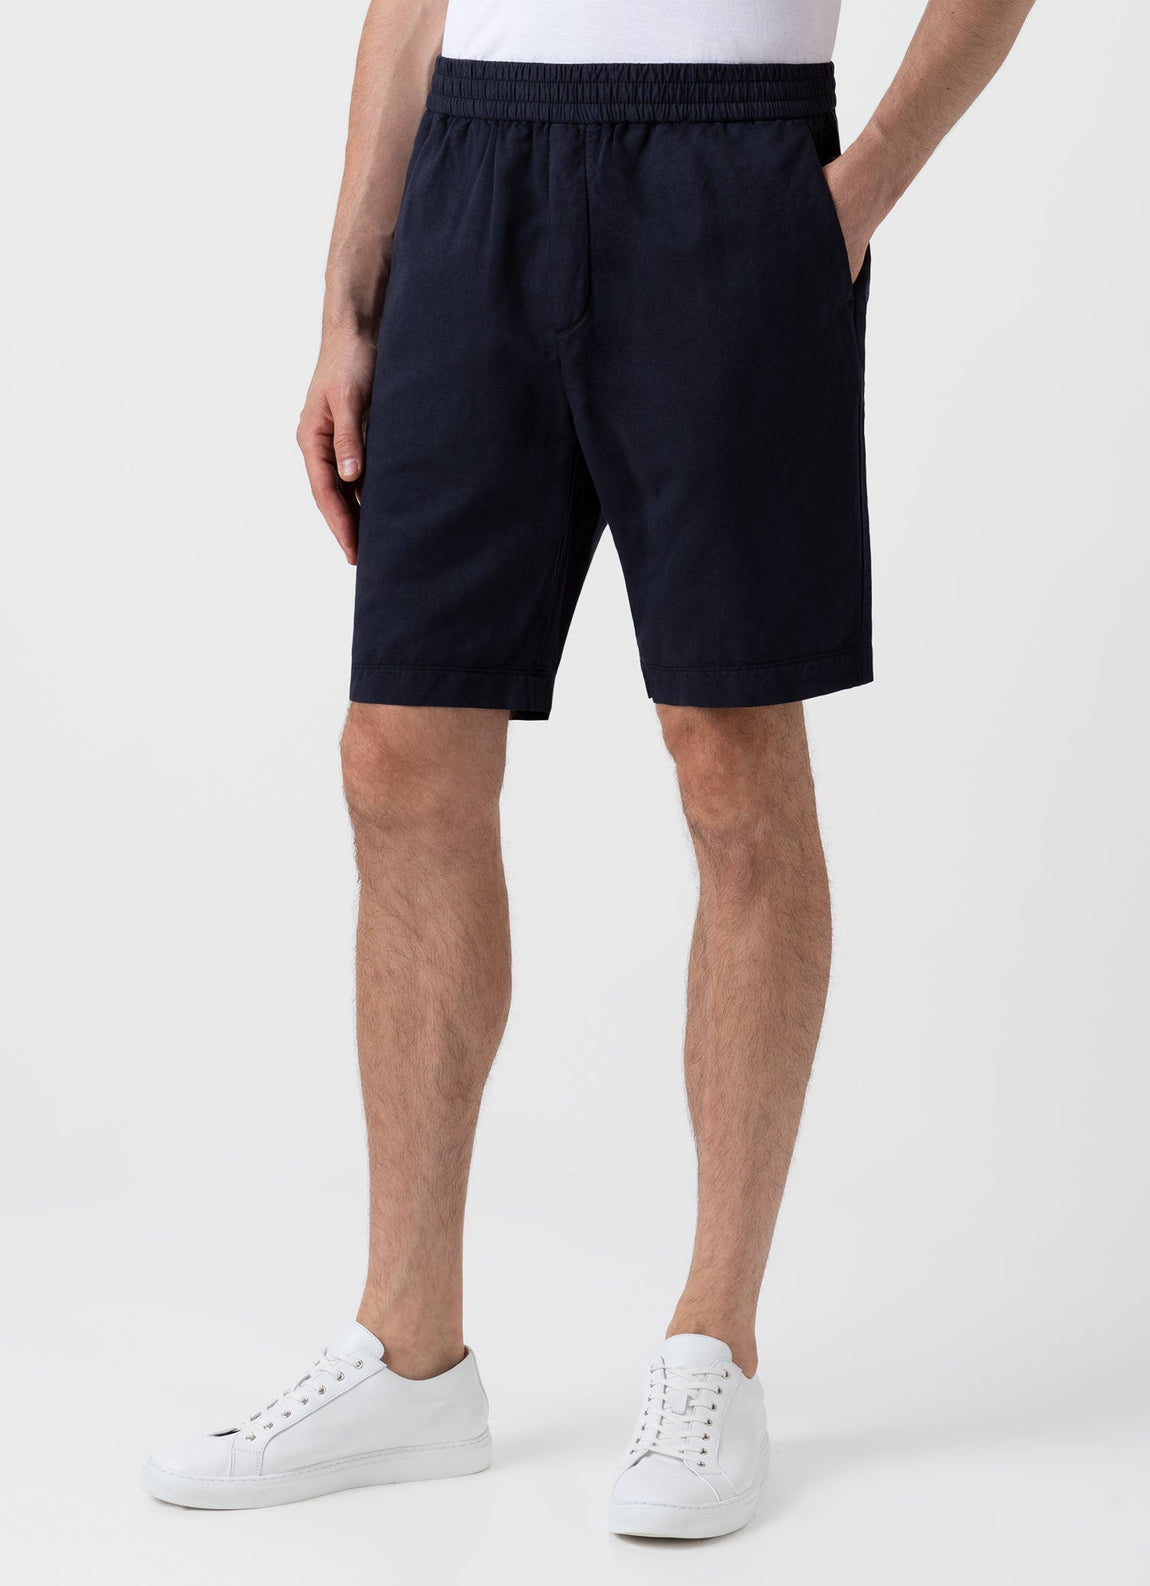 Men's Cotton Linen Drawstring Shorts in Navy | Sunspel